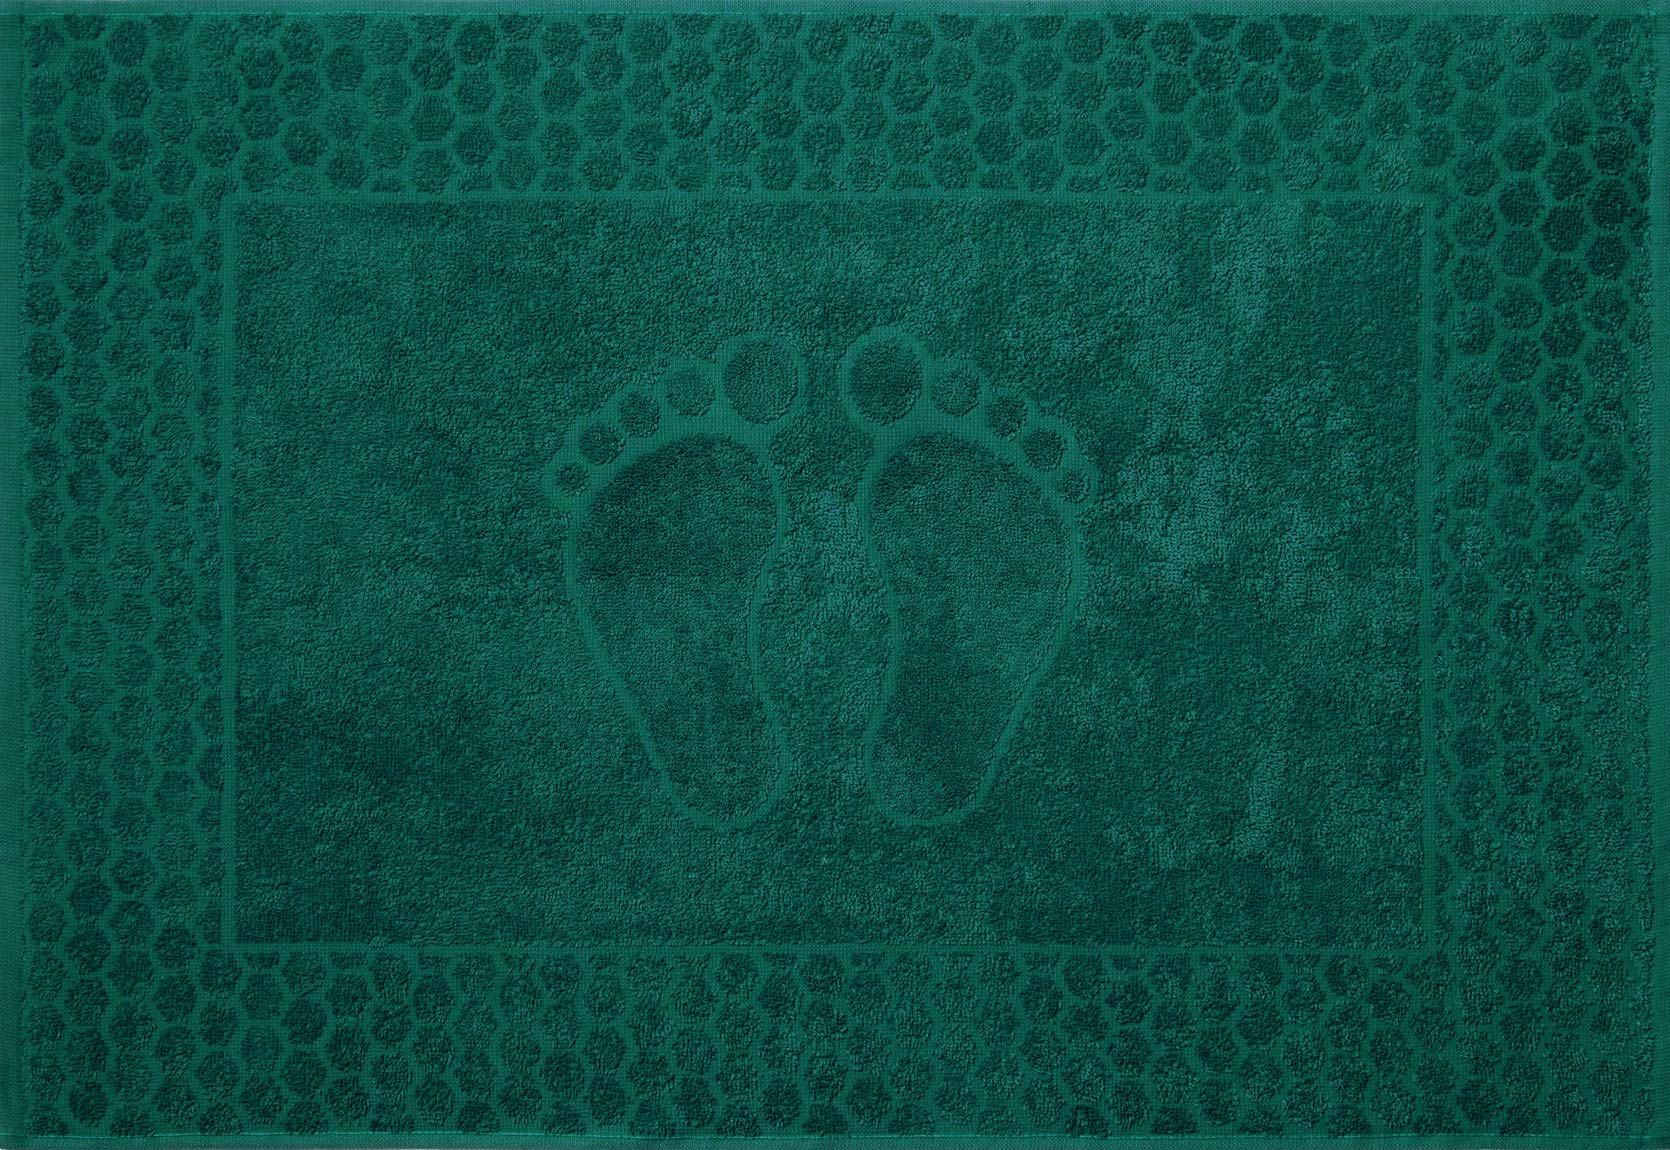 Постельное белье Махровое полотенце для ног Ножки Изумруд, 50х70 фото